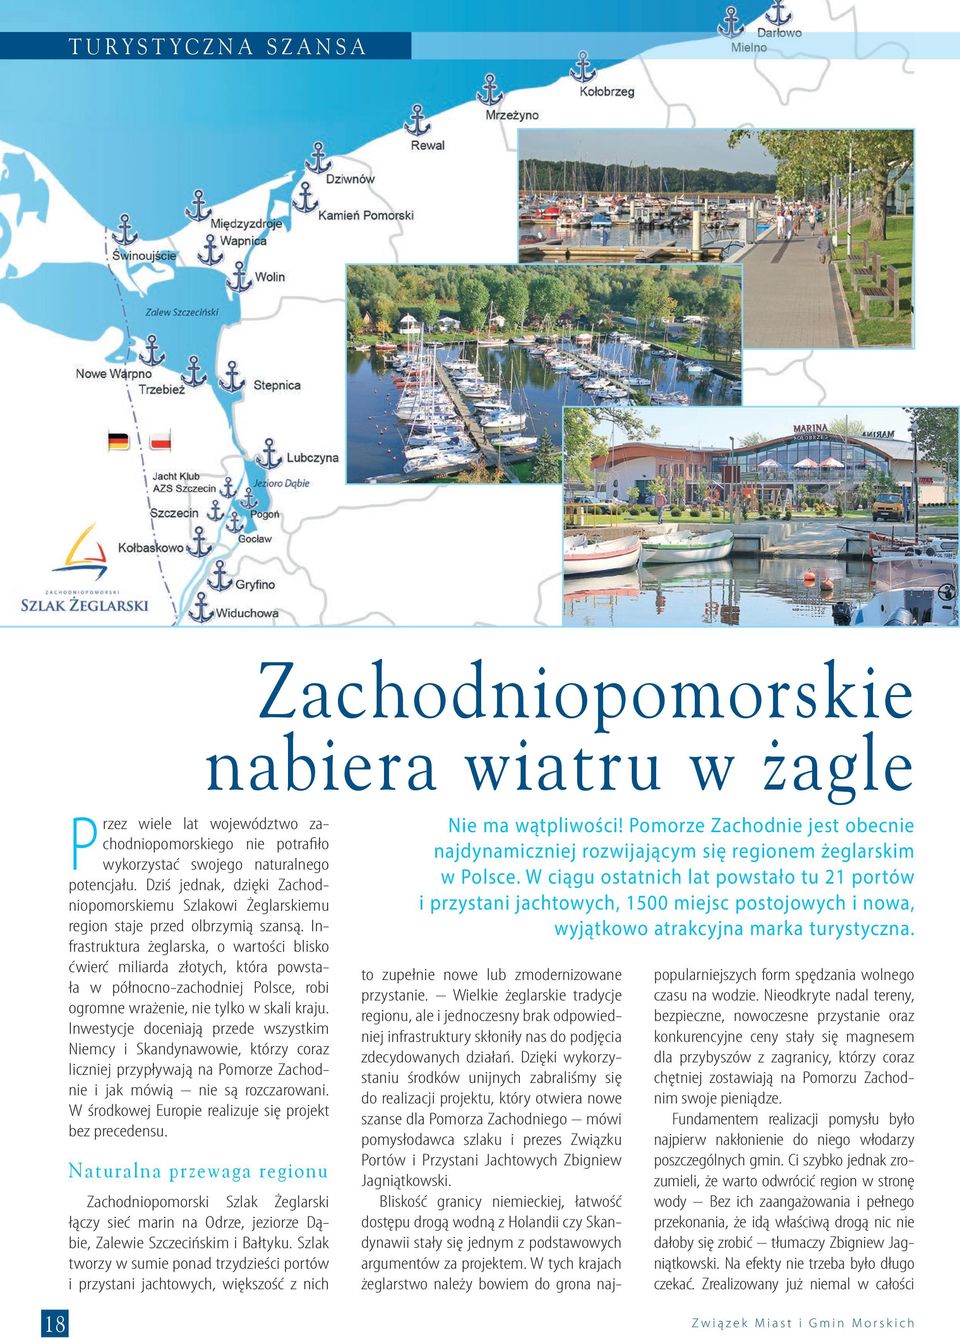 Infrastruktura żeglarska, o wartości blisko ćwierć miliarda złotych, która powstała w północno-zachodniej Polsce, robi ogromne wrażenie, nie tylko w skali kraju.